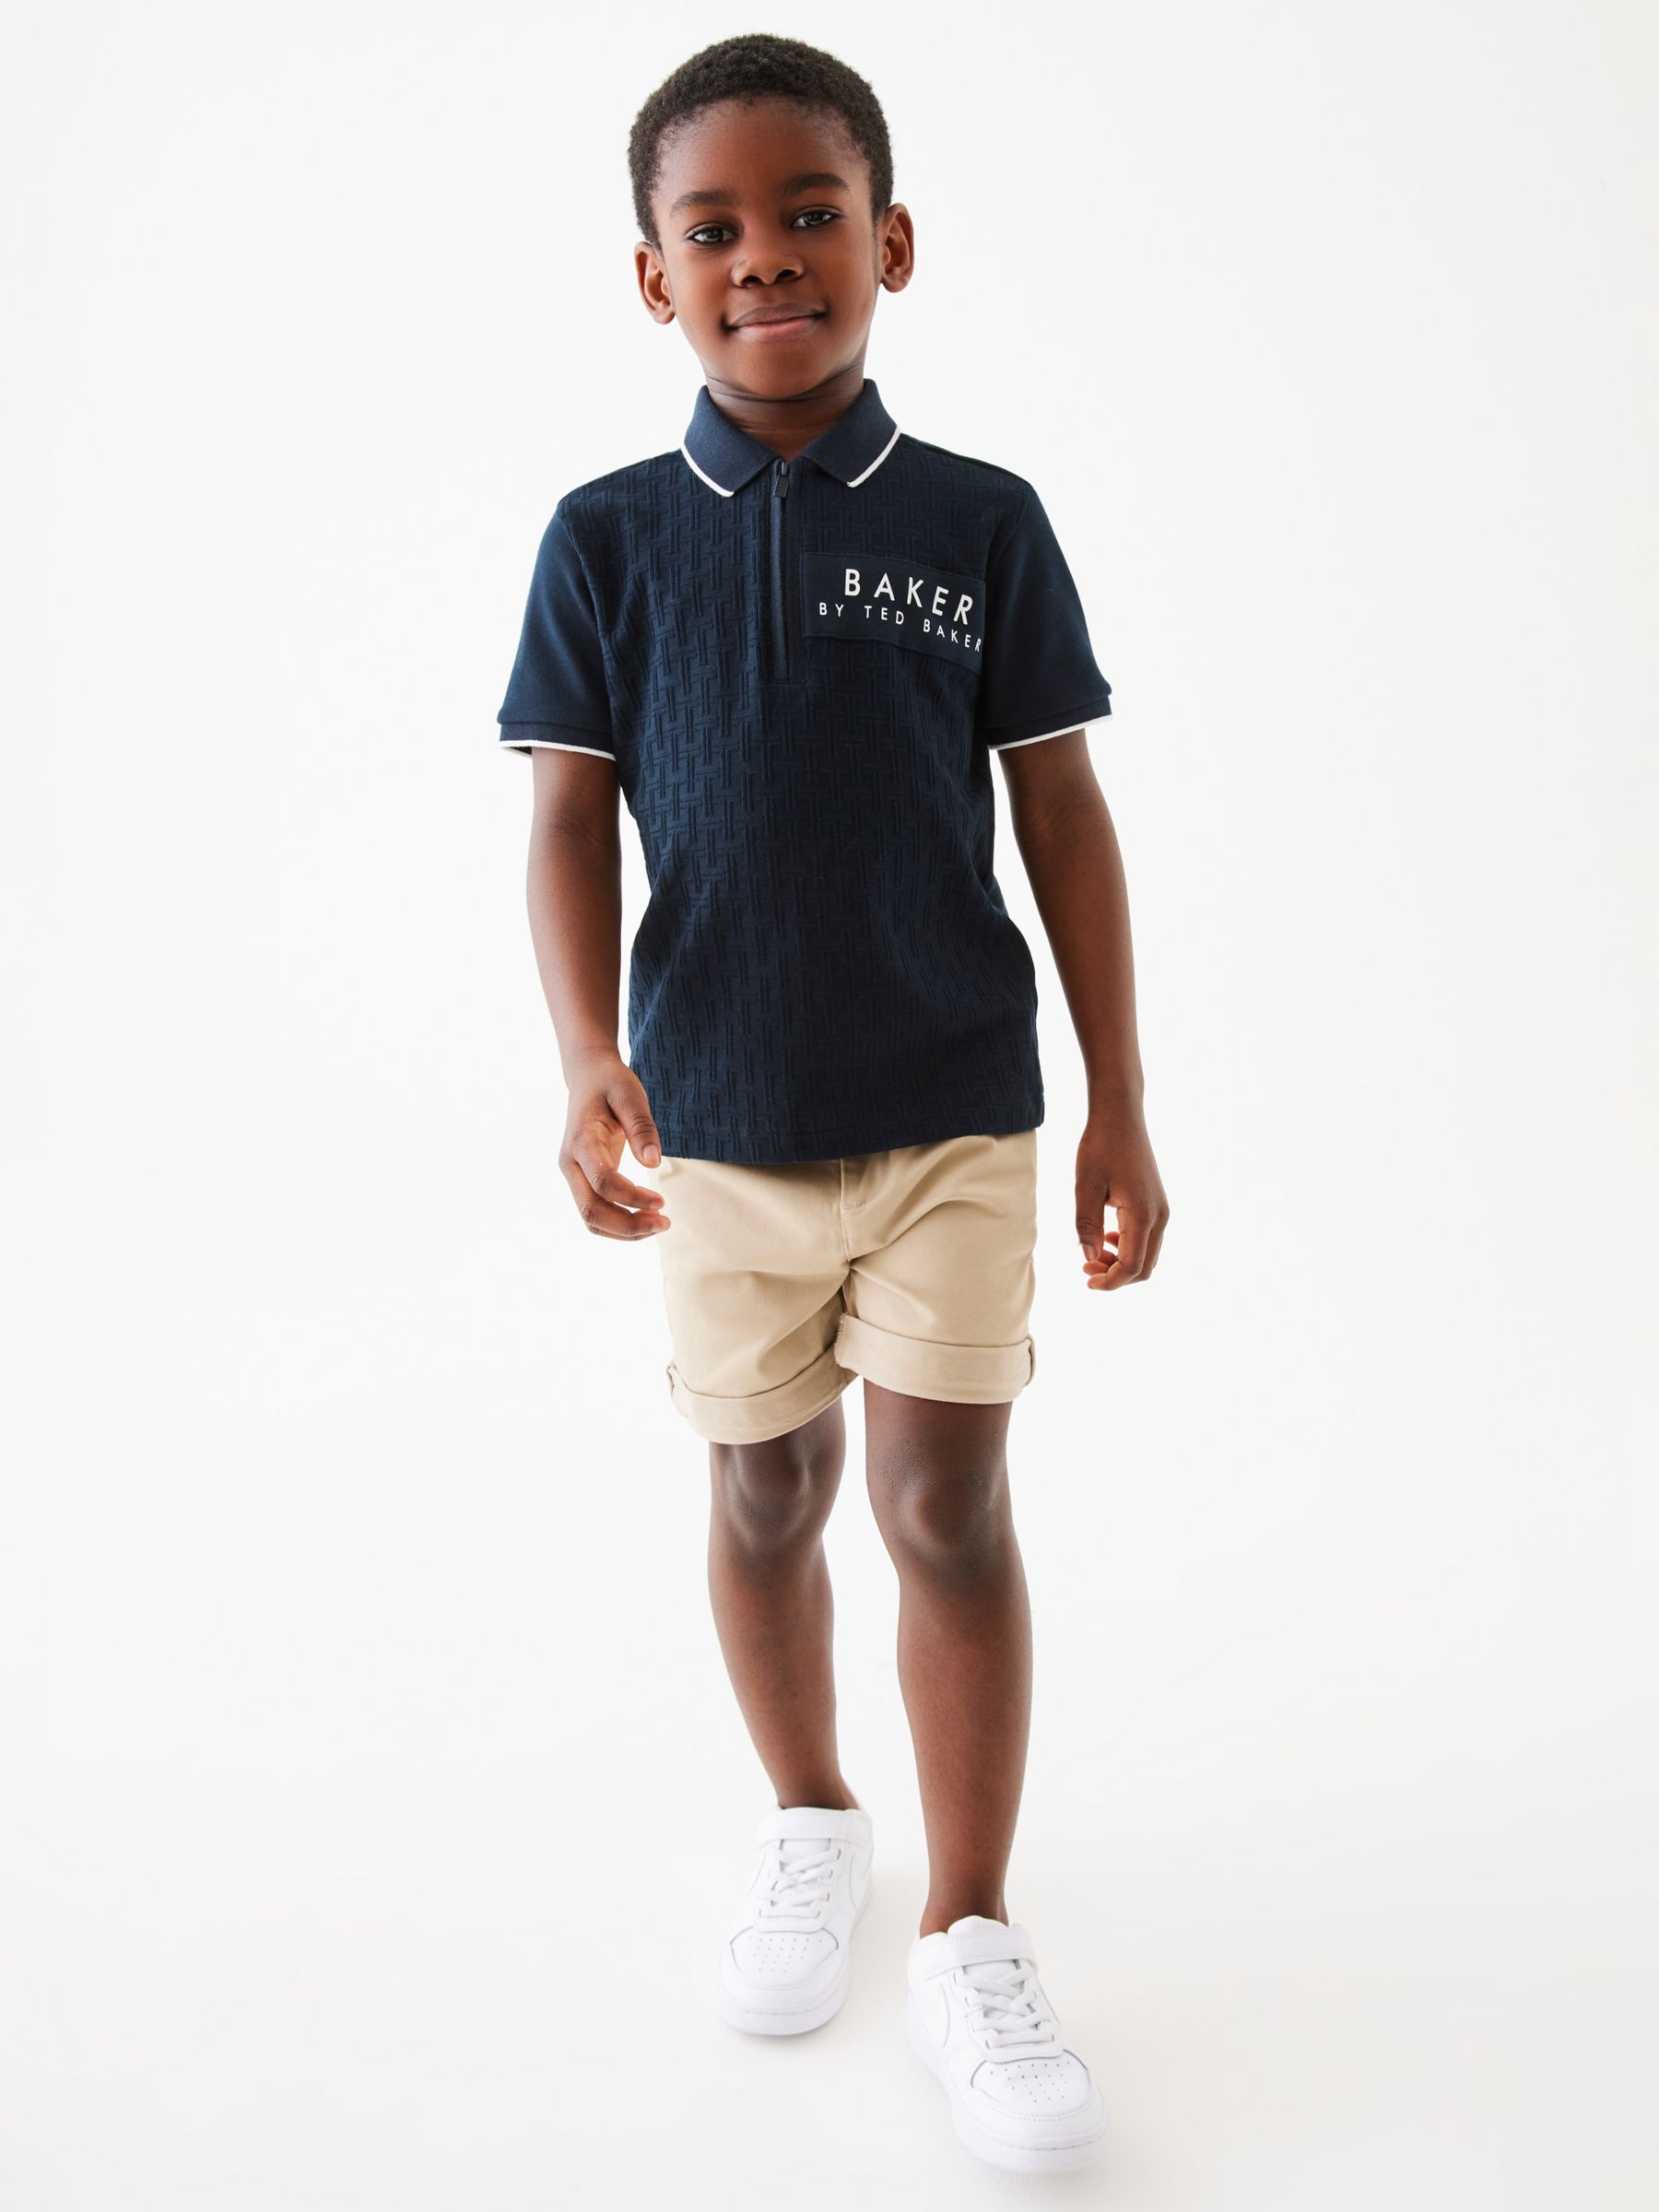 Ted Baker Kids' Logo Textured Zip Polo Shirt, Navy, 12-18 months